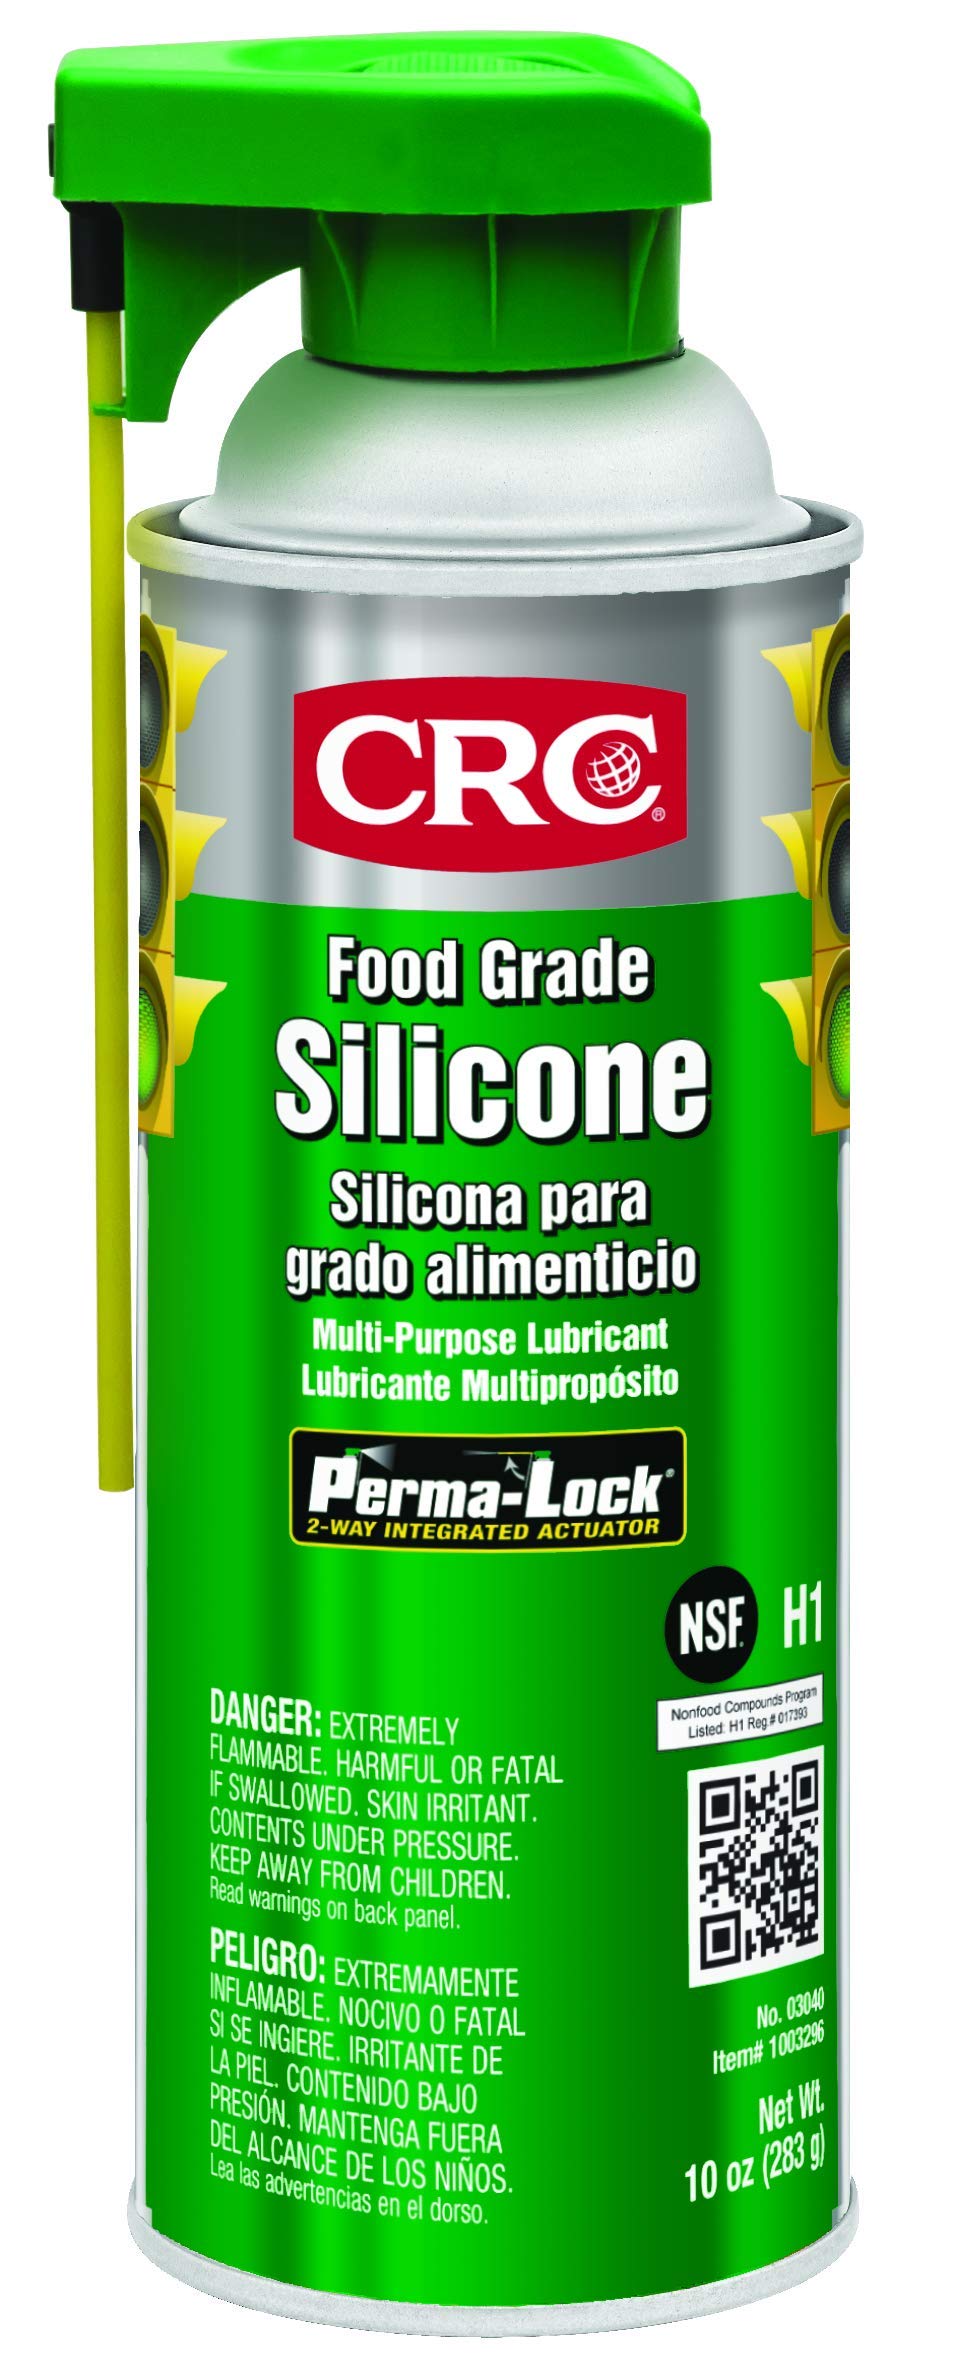 CRC 食品级硅胶，10 重量盎司，适用于高温应用的多用途硅胶润滑剂，NSF H1 注册气溶胶喷雾...